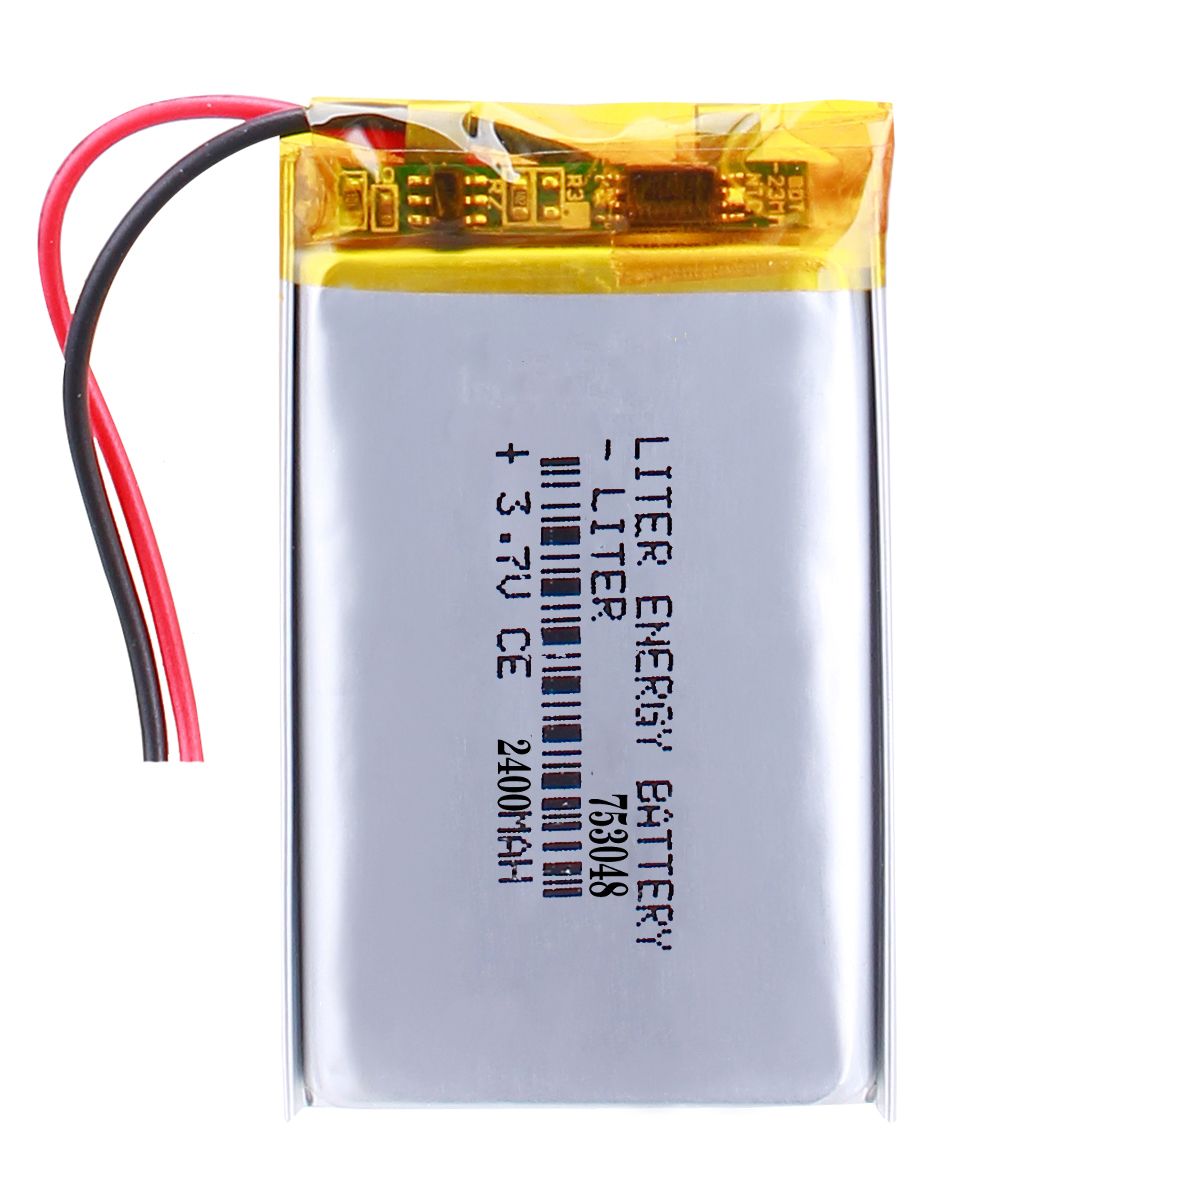 753048 2400mAh Custom 2P LiPo Batteries Manufacturer